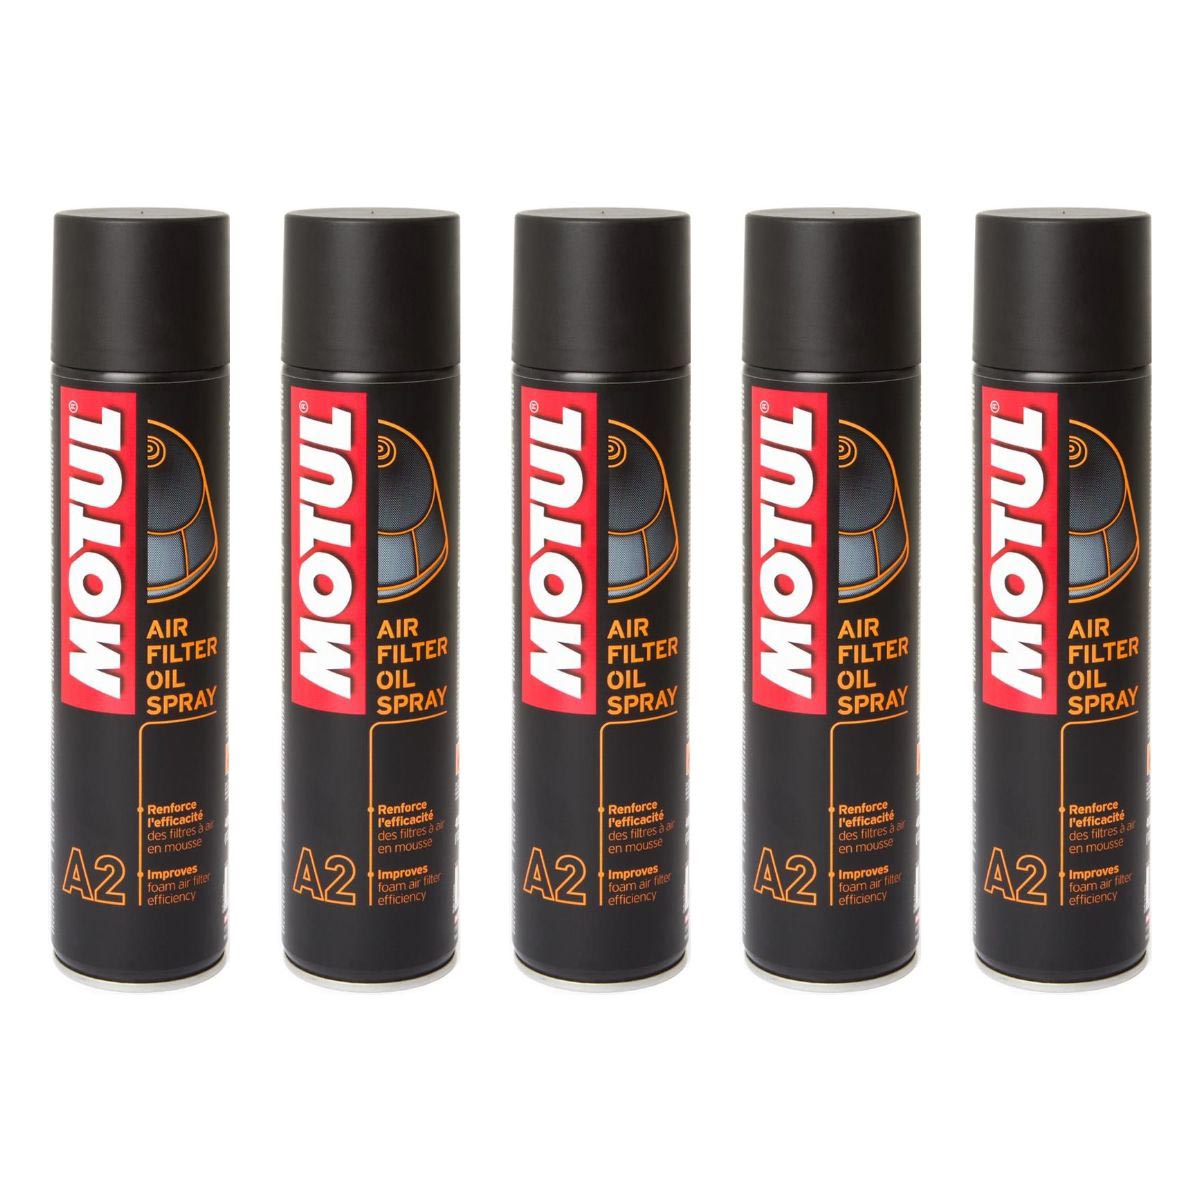 Motul Spray Olio Filtro Aria A2 Set: 5 pezzi, 400 ml ciascuno